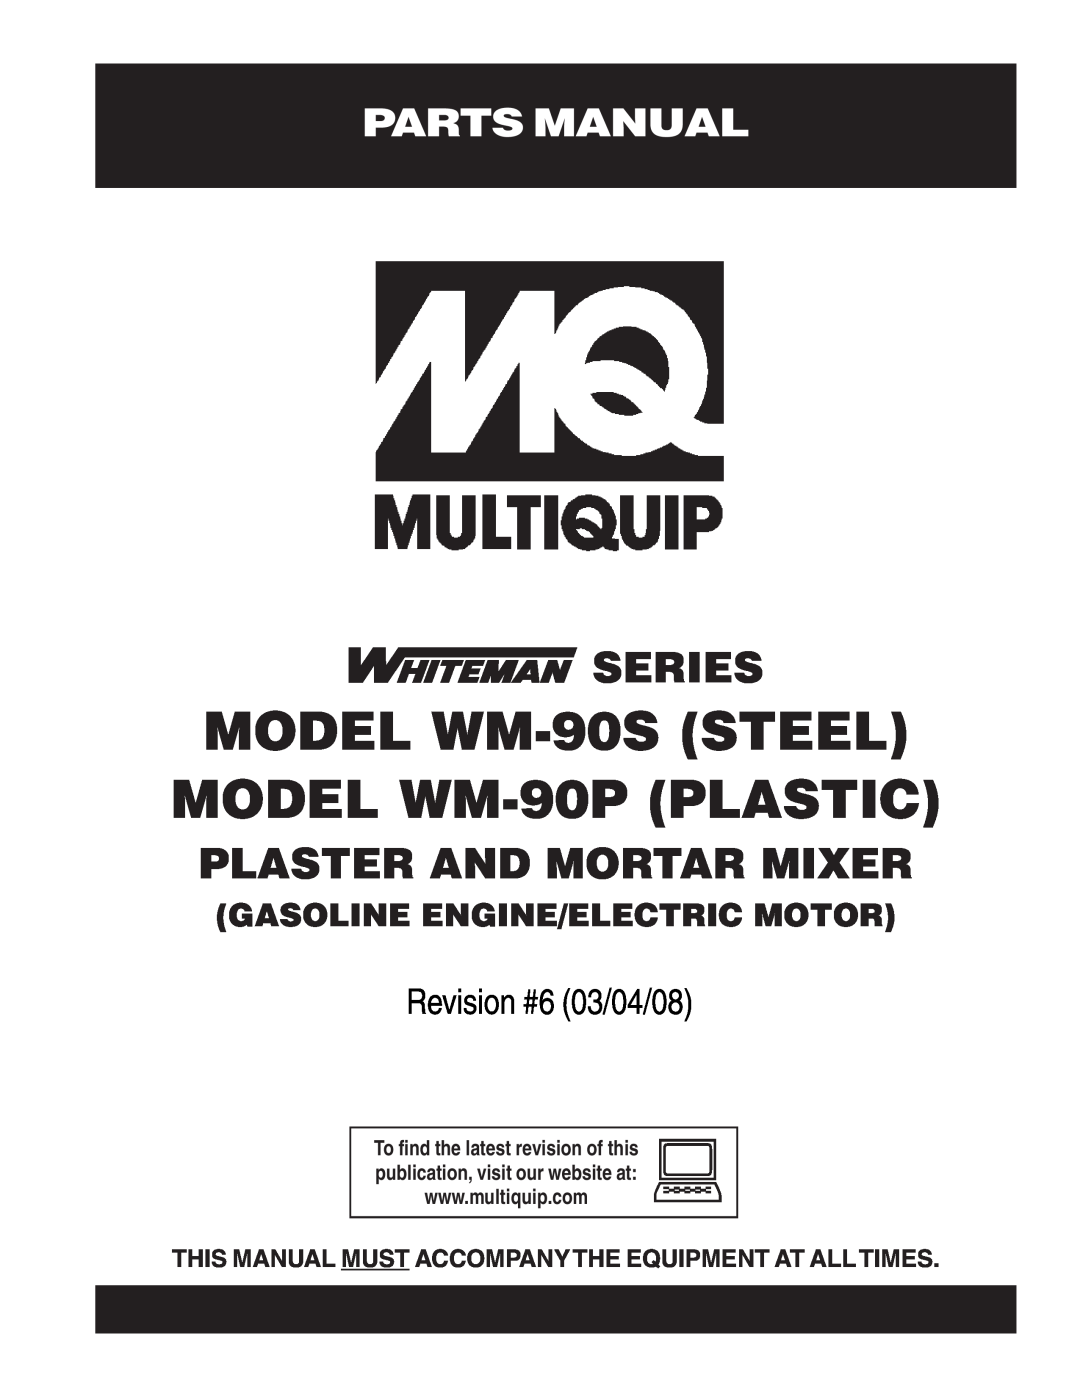 Multiquip manual Parts Manual, MODEL WM-90SSTEEL MODEL WM-90PPLASTIC, Series, Plaster And Mortar Mixer 